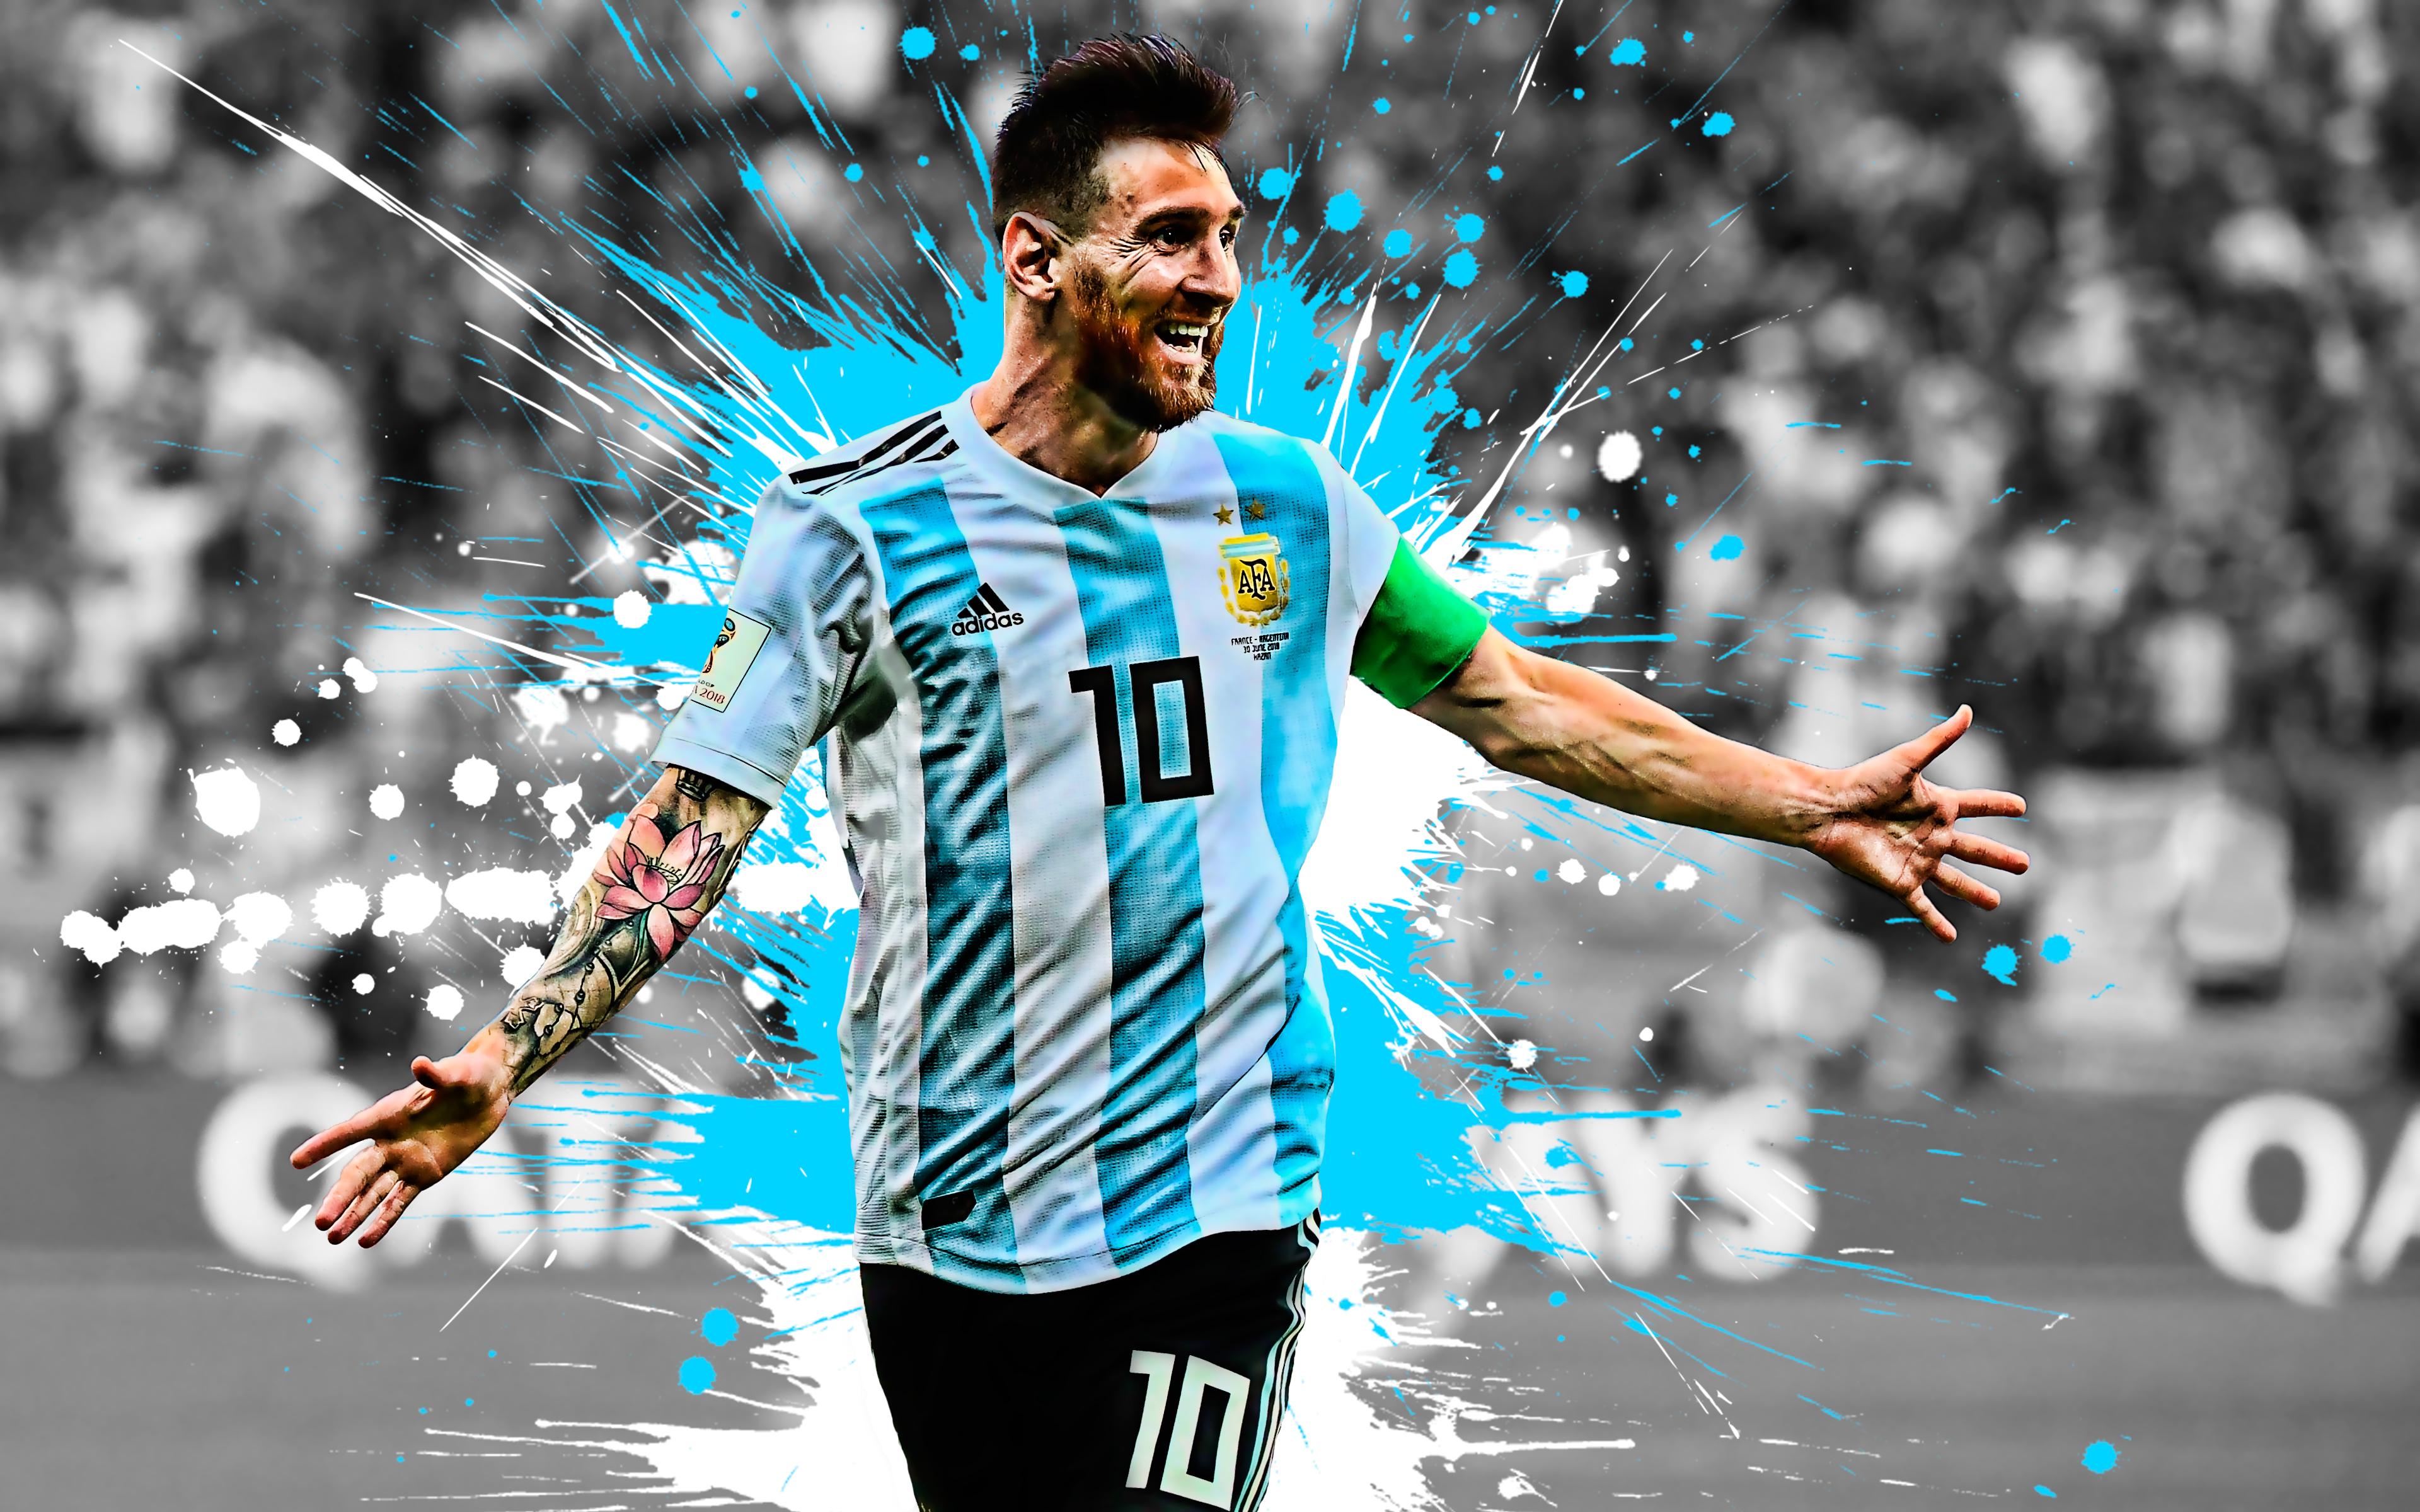 3840 x 2400 · jpeg - Lionel Messi 4k Ultra HD Wallpaper | Background Image | 3840x2400 | ID ...